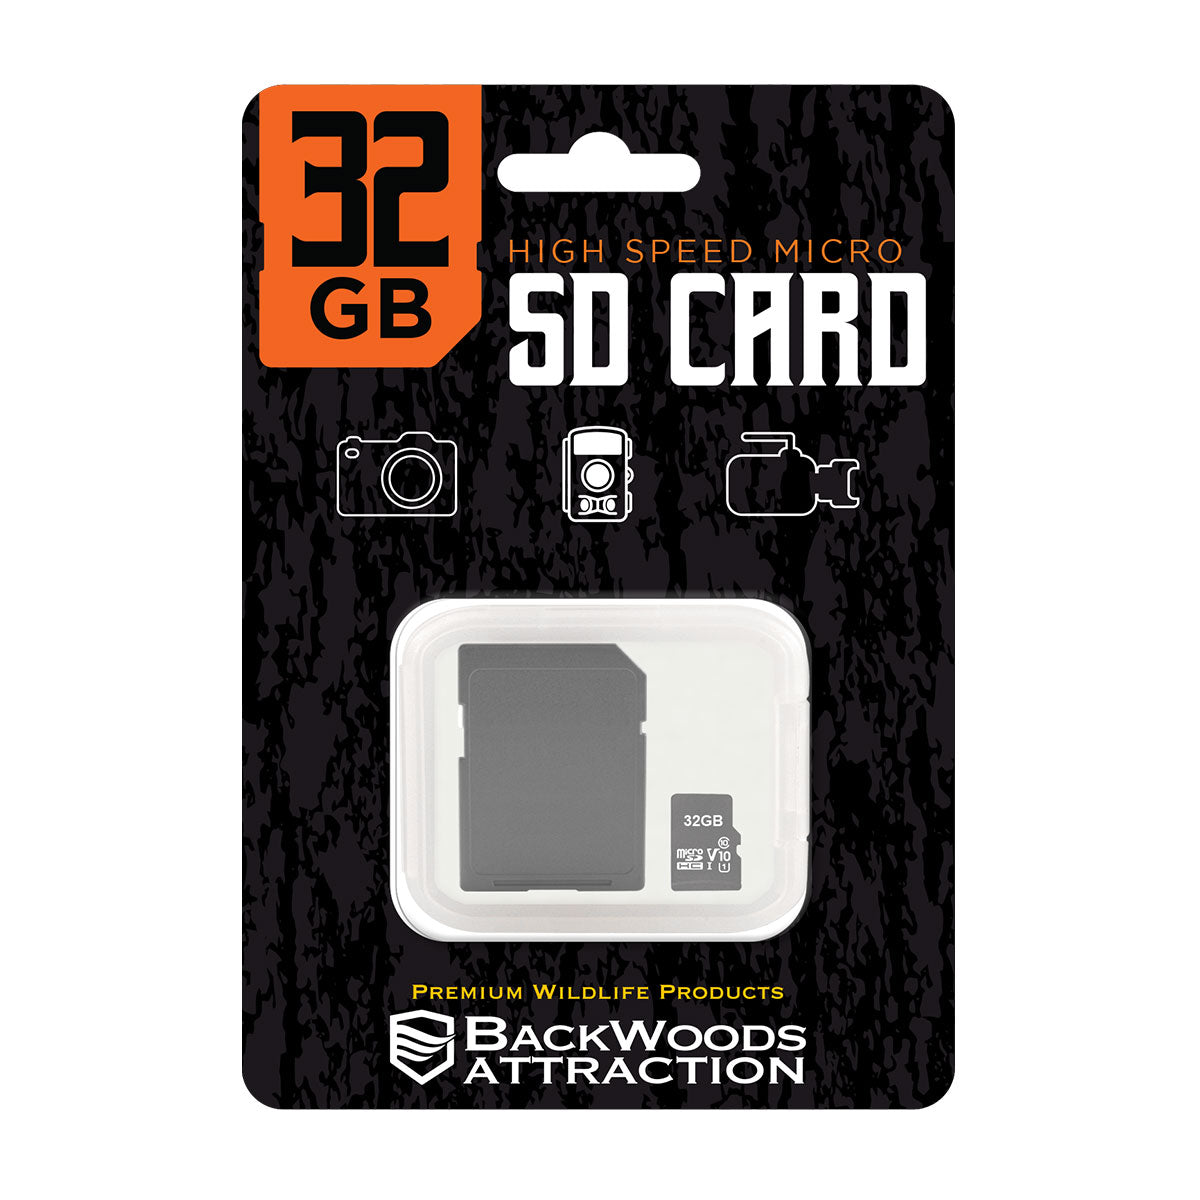 BWA MICRO SD CARD 32GB